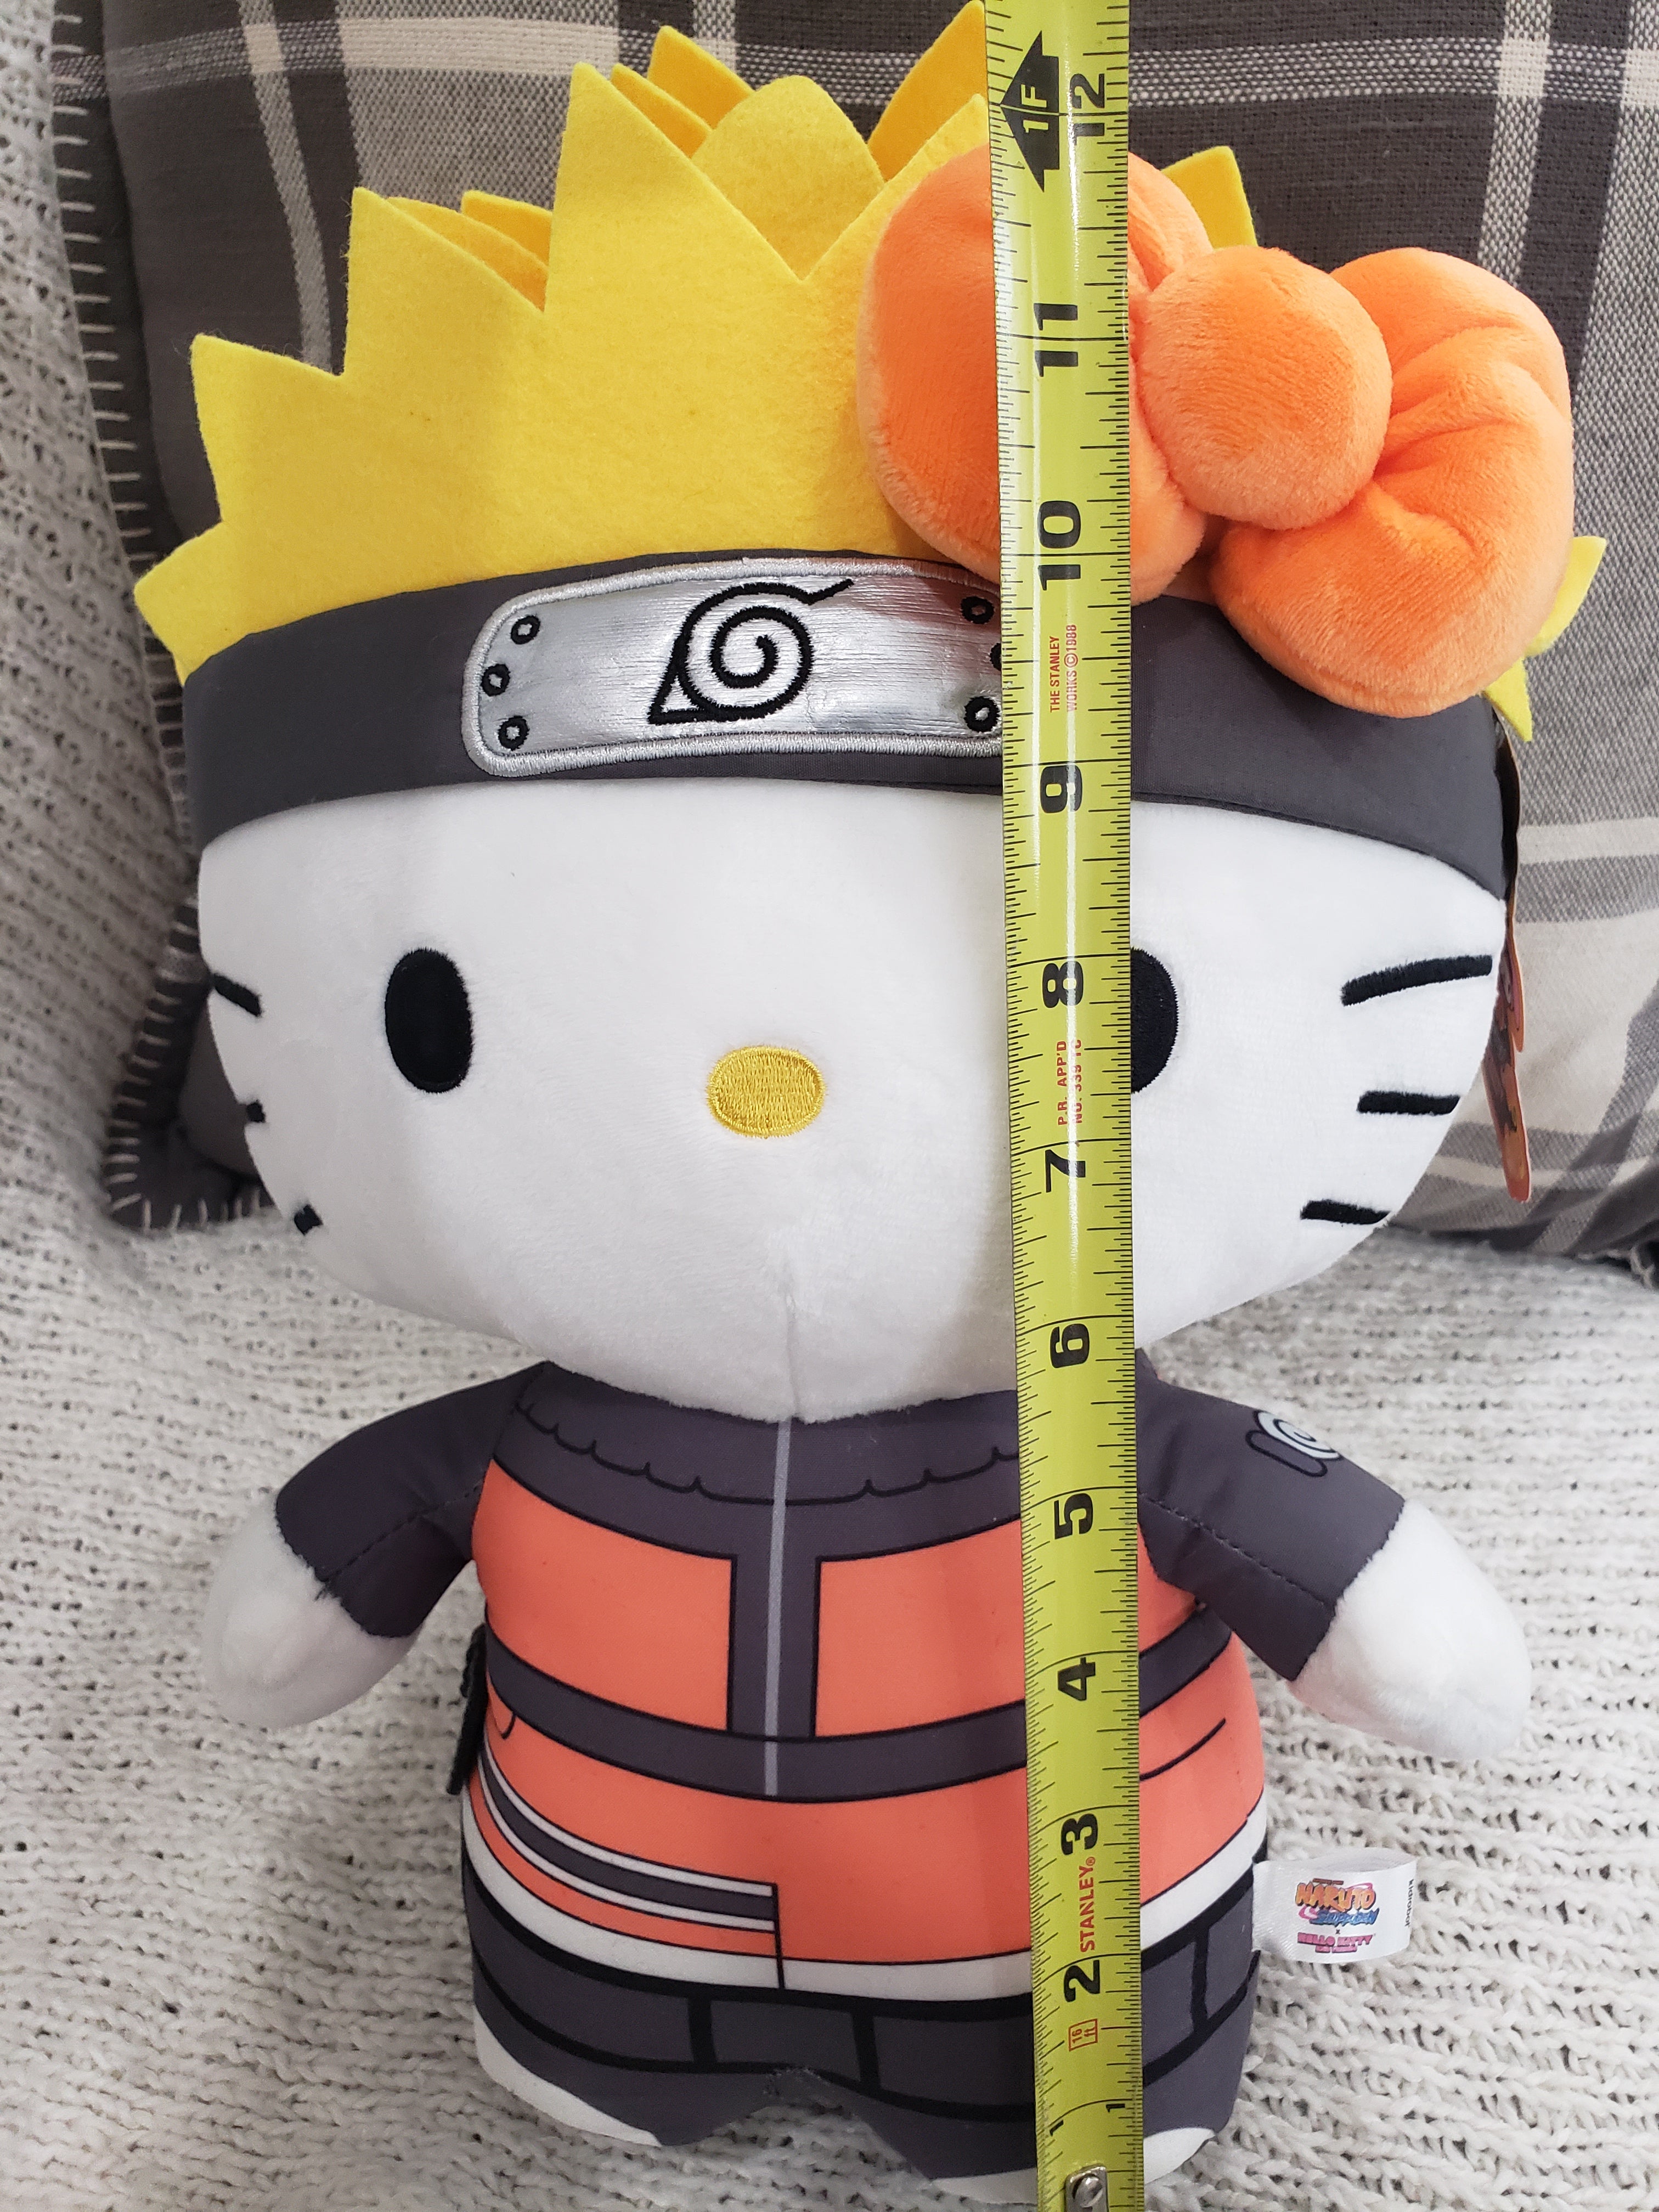 Naruto x Hello Kitty 13 Plush - Naruto